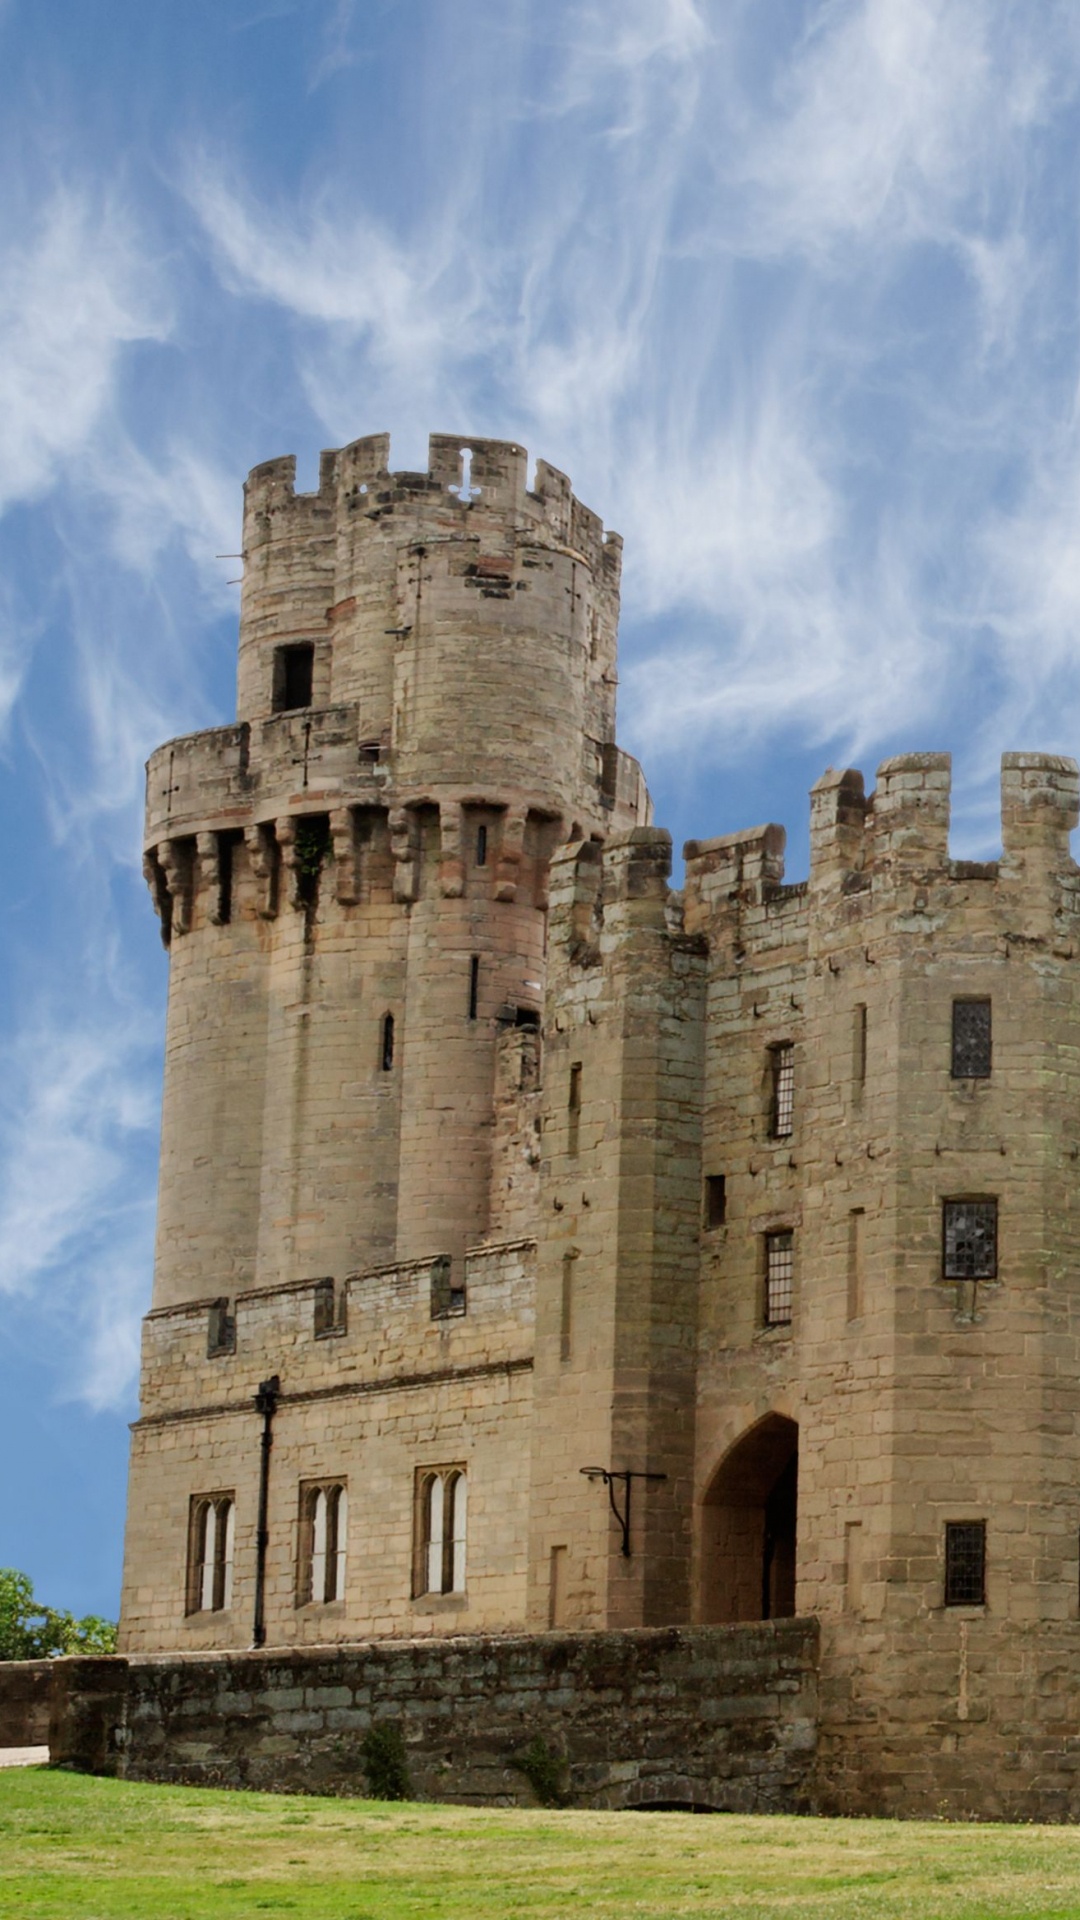 城堡, 中世纪建筑风格, 防御工事, 历史站, 伦敦 壁纸 1080x1920 允许